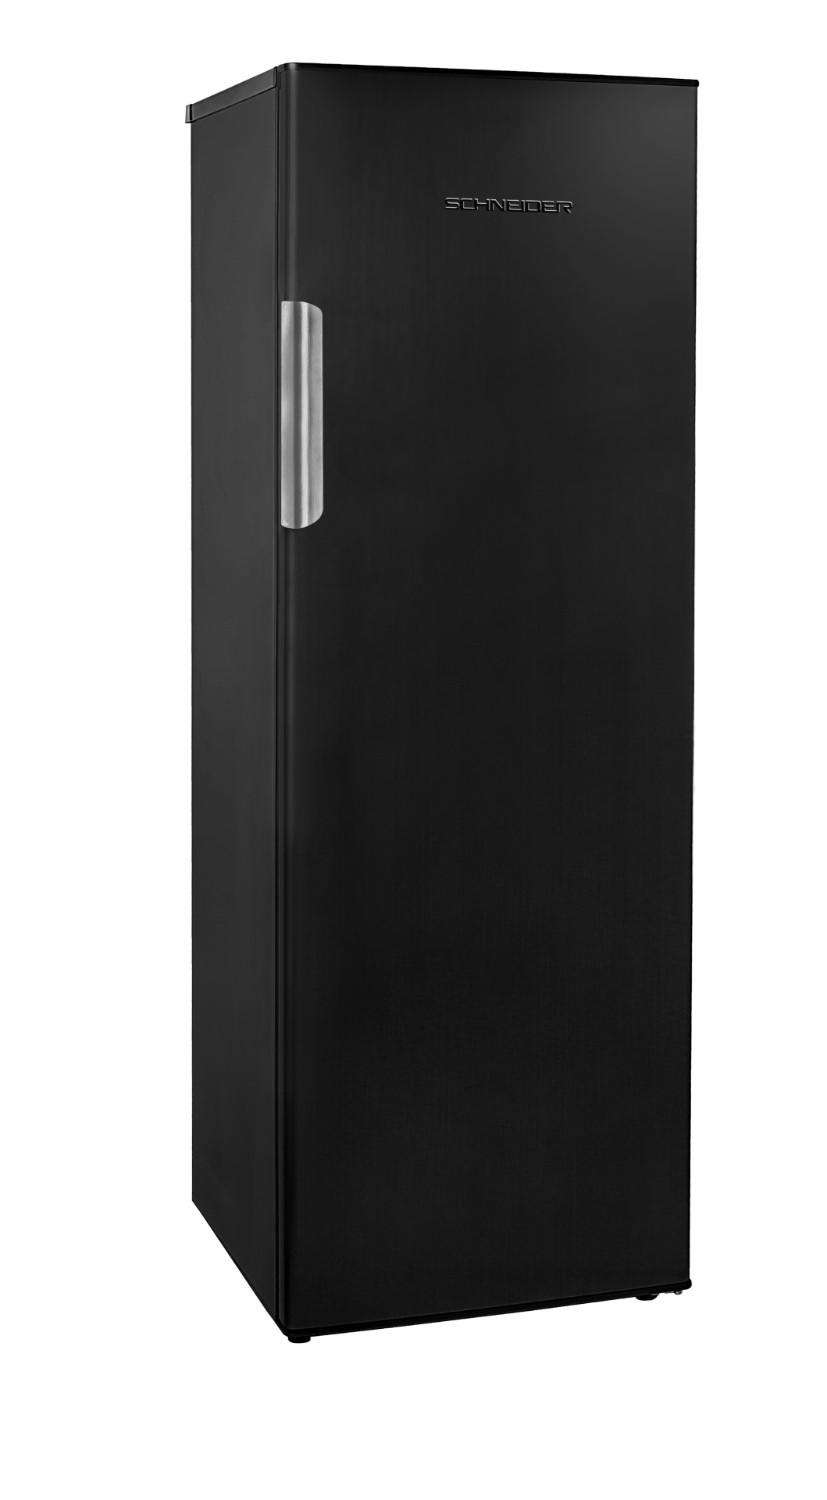 Refrigerator 1 door in matte black 325 L - Schneider